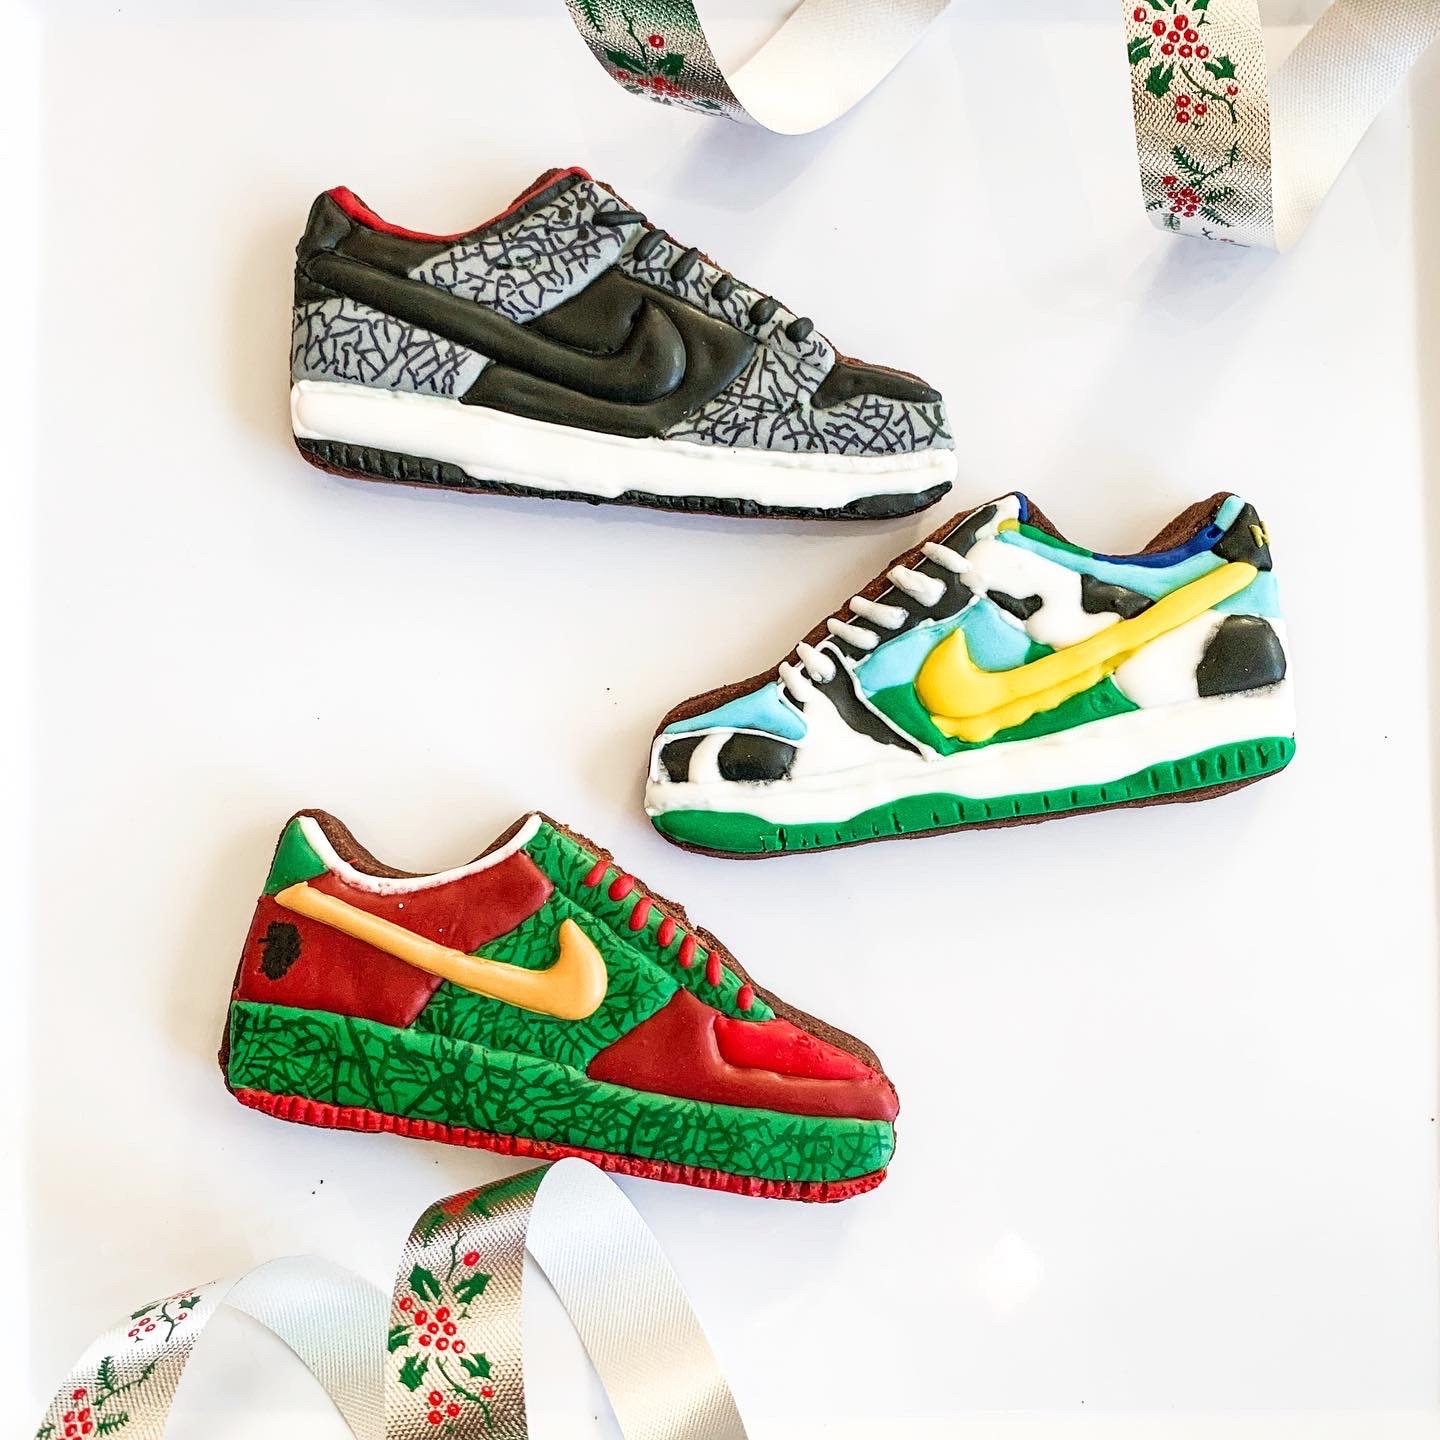 Dosering Herhaald Mathis Custom Nike Shoe Sugar Cookie Set - Etsy België